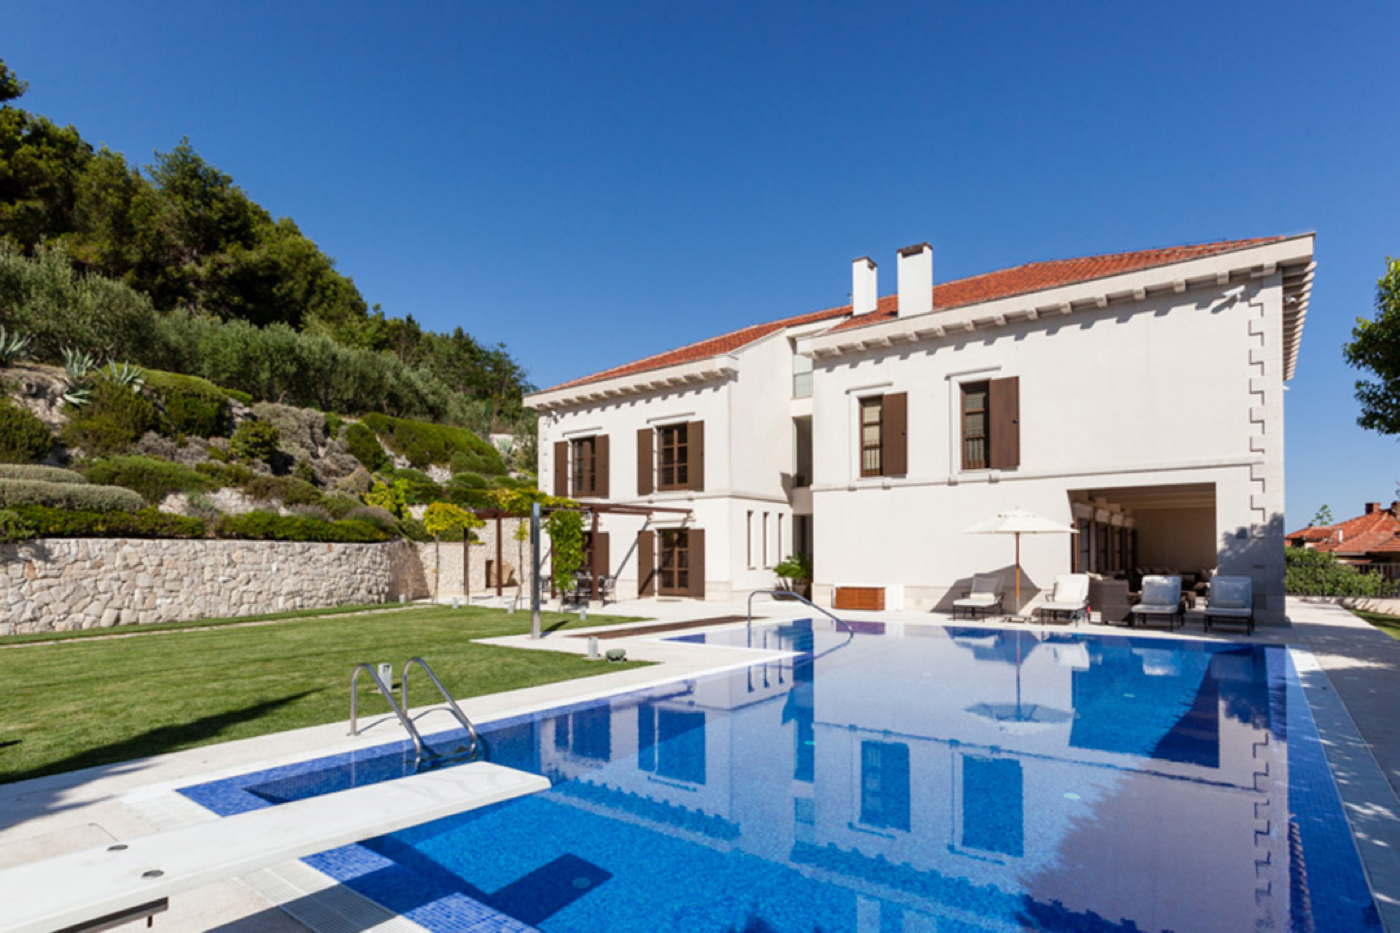 Gepflegte Ferienvilla mit Service-Ferienhaus mit Pool in Kroatien-Split